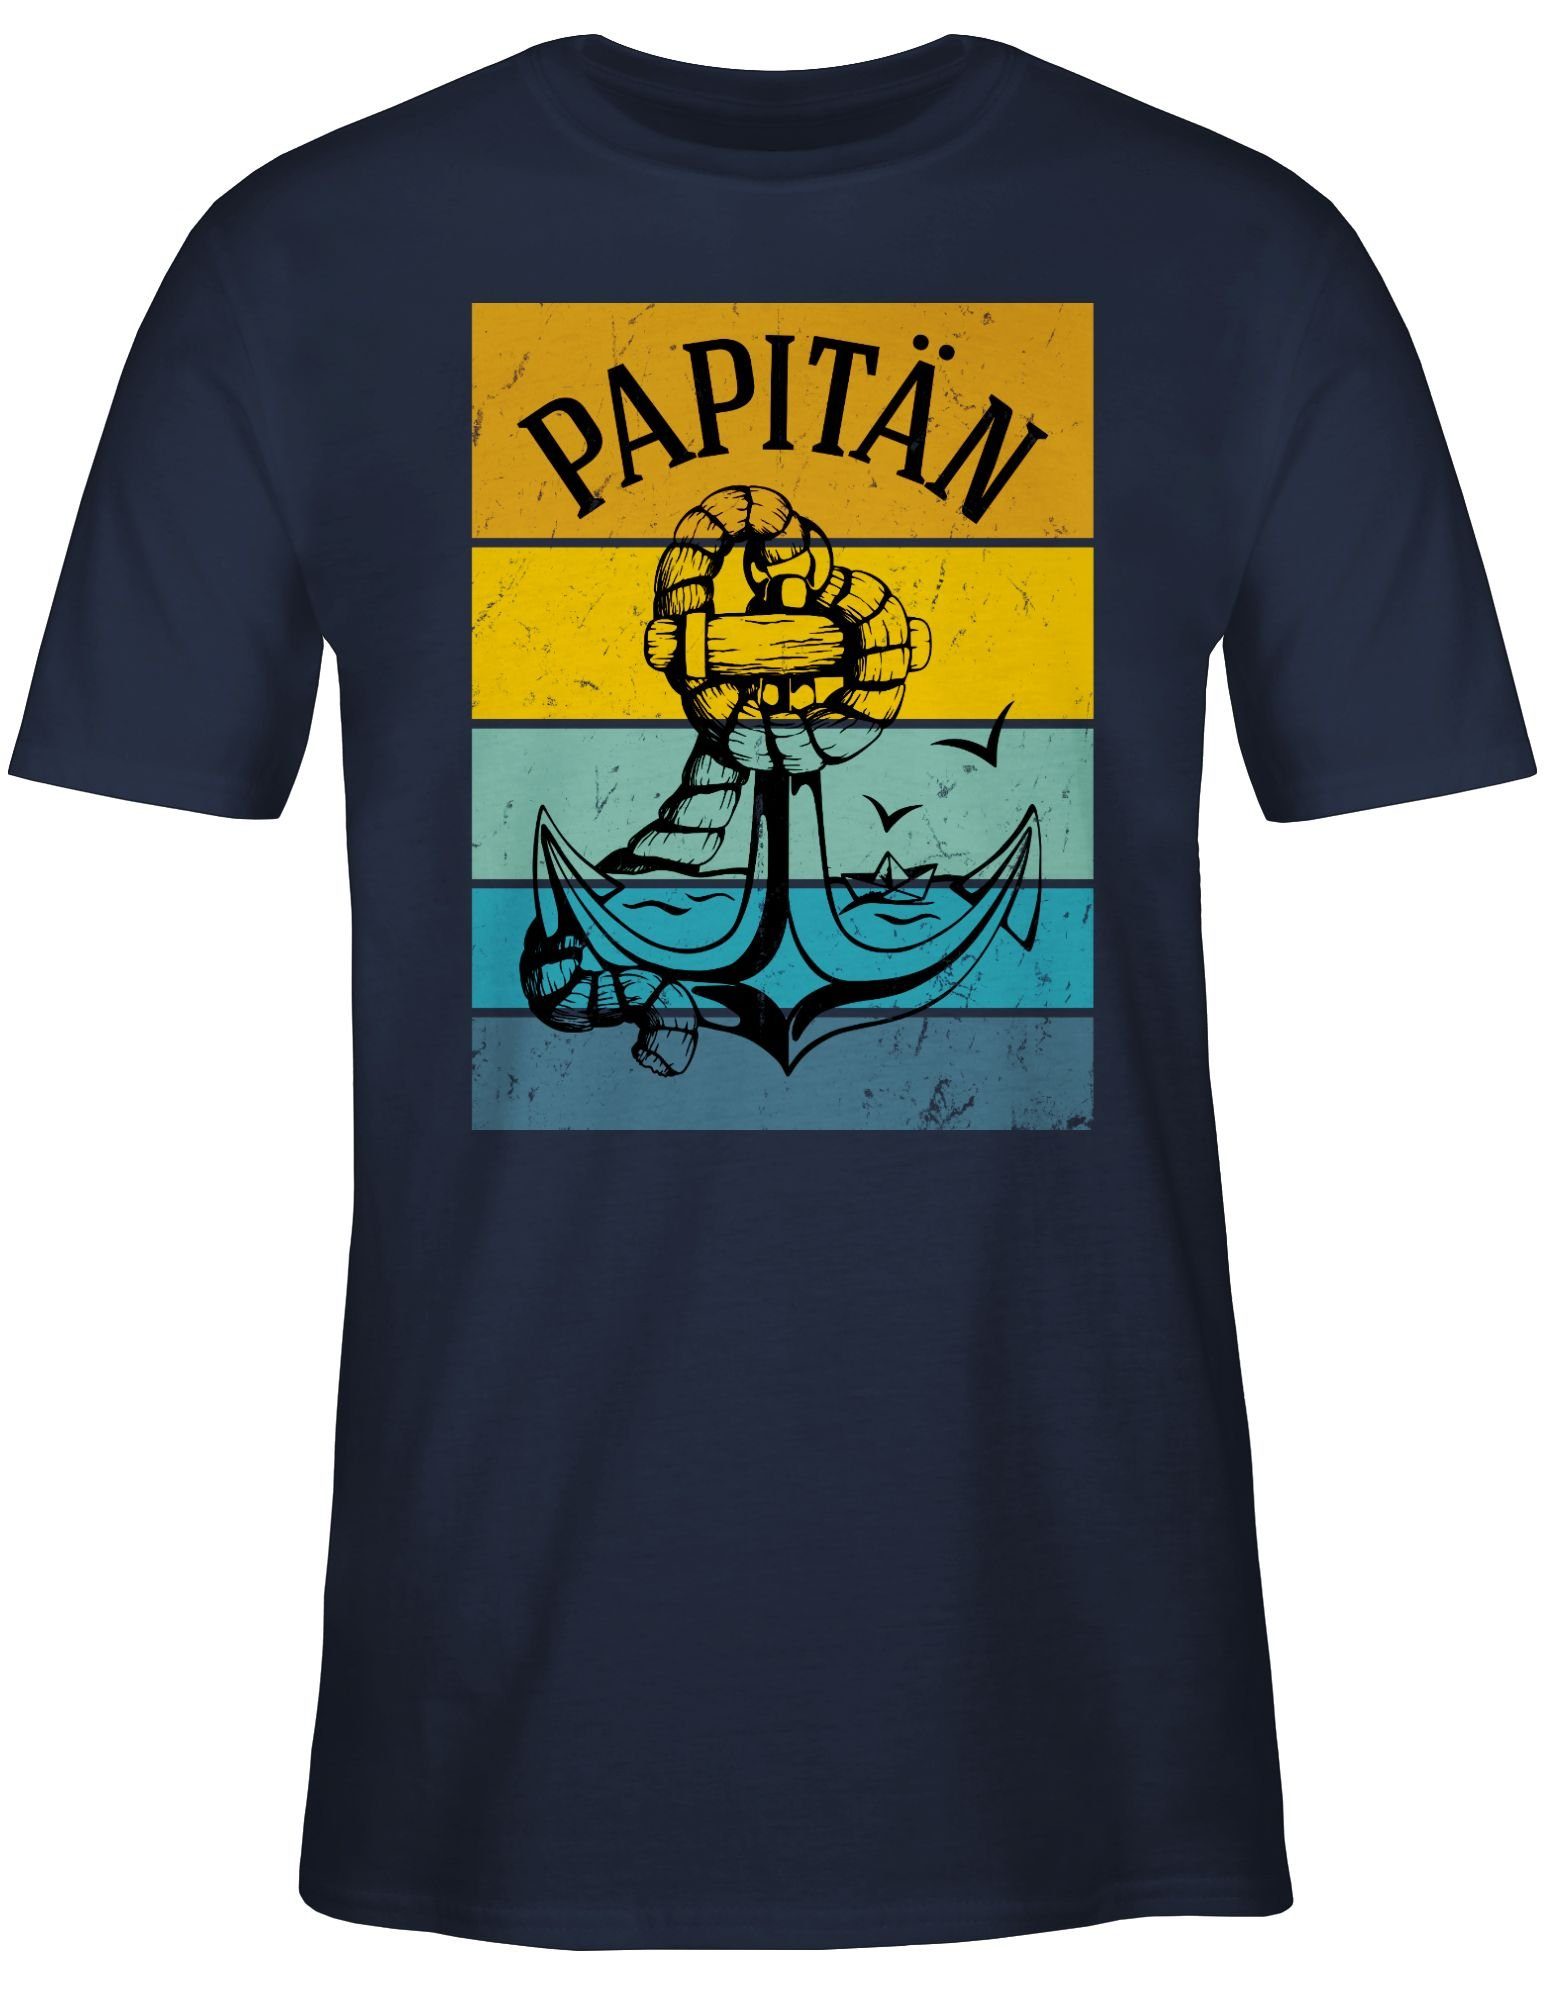 01 Papa Shirtracer Blau Anker Navy für T-Shirt Vatertag Geschenk Papitän